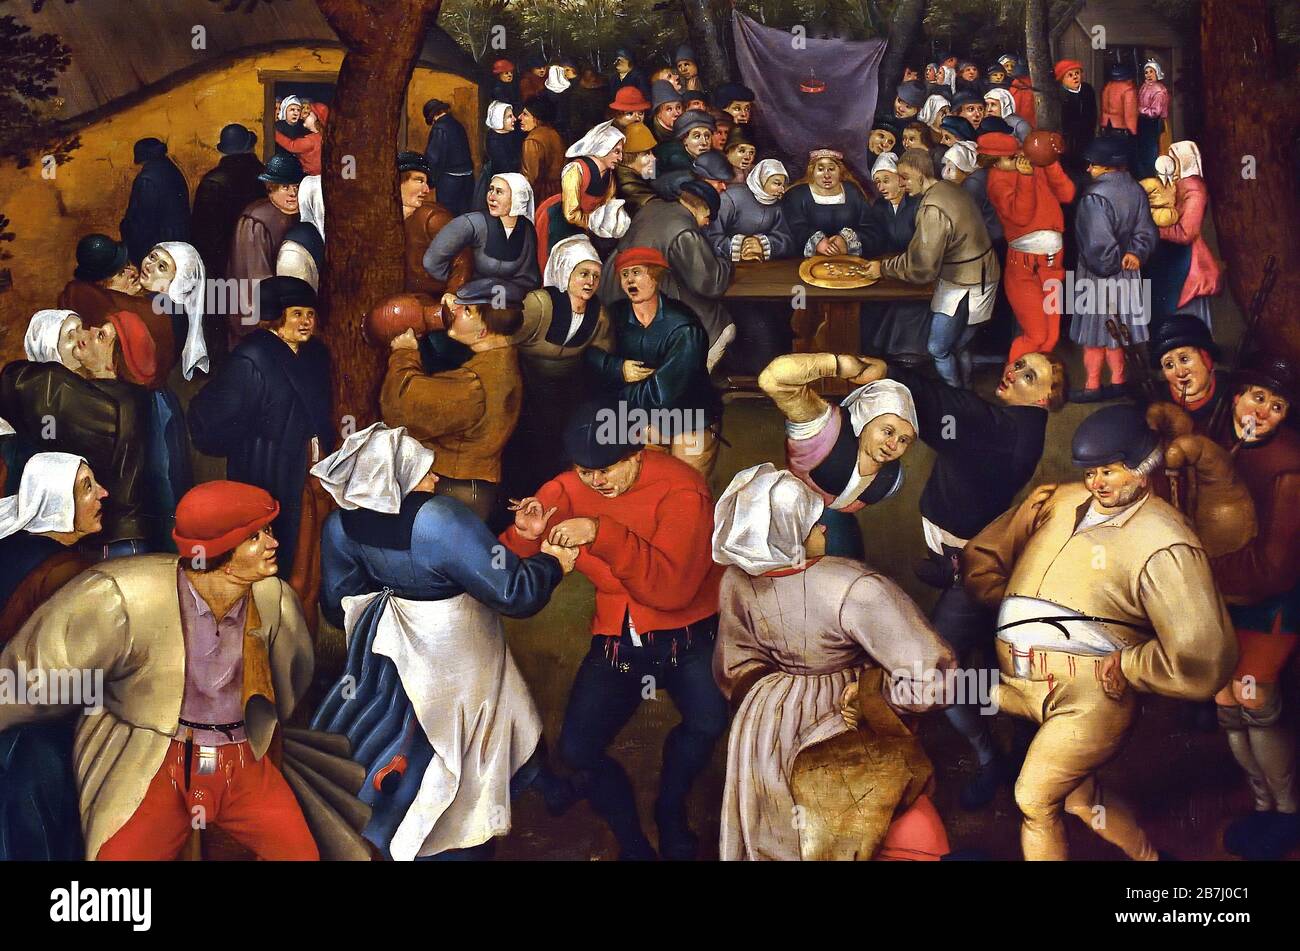 La danse de mariage en plein air par Pieter Brueghel le Jeune 1564-1637, la famille Brueghel ( Bruegel ou Breughel ), peintres flamands du XVIe au XVIIe siècle, belge, Belgique. Banque D'Images